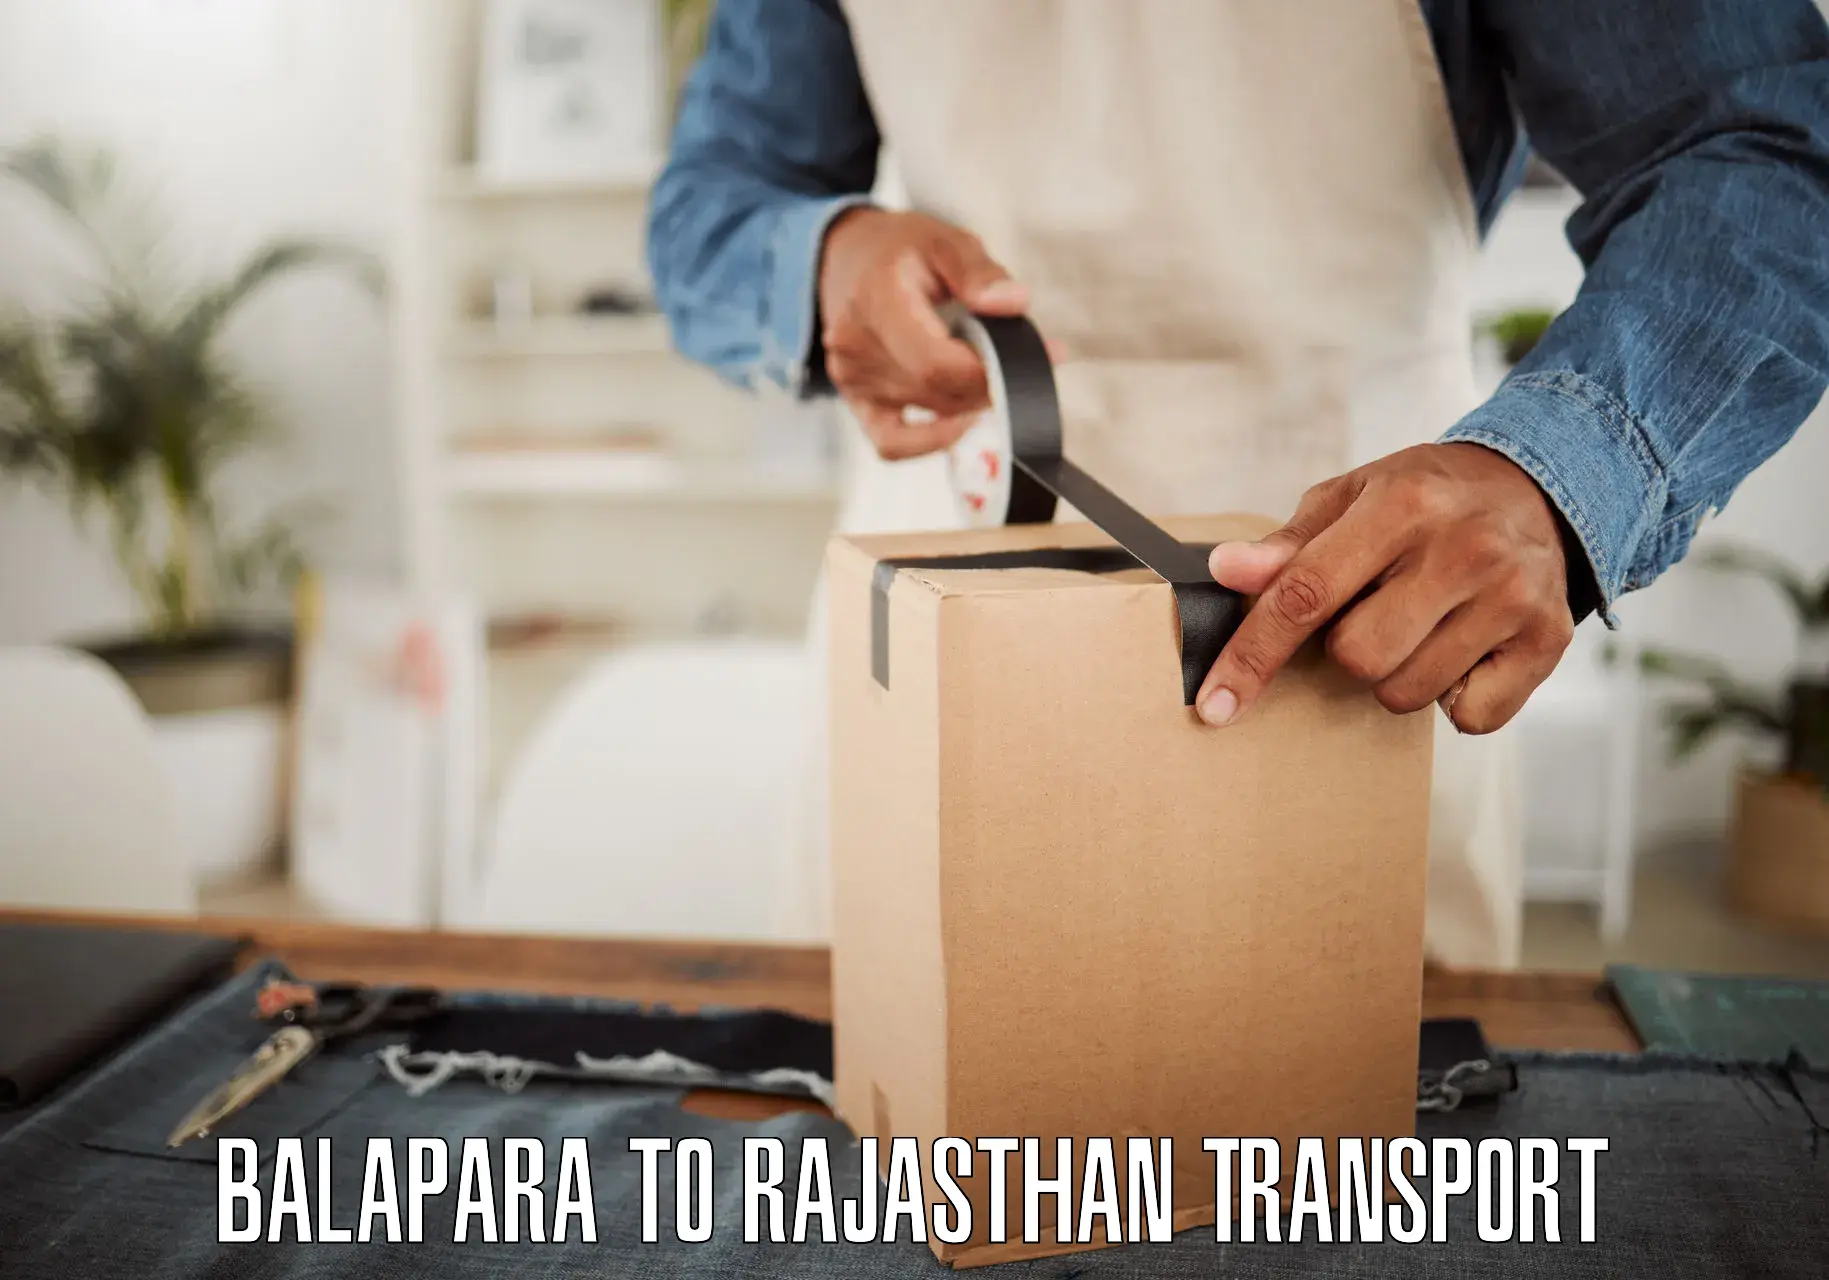 Nationwide transport services Balapara to Yathalakunta